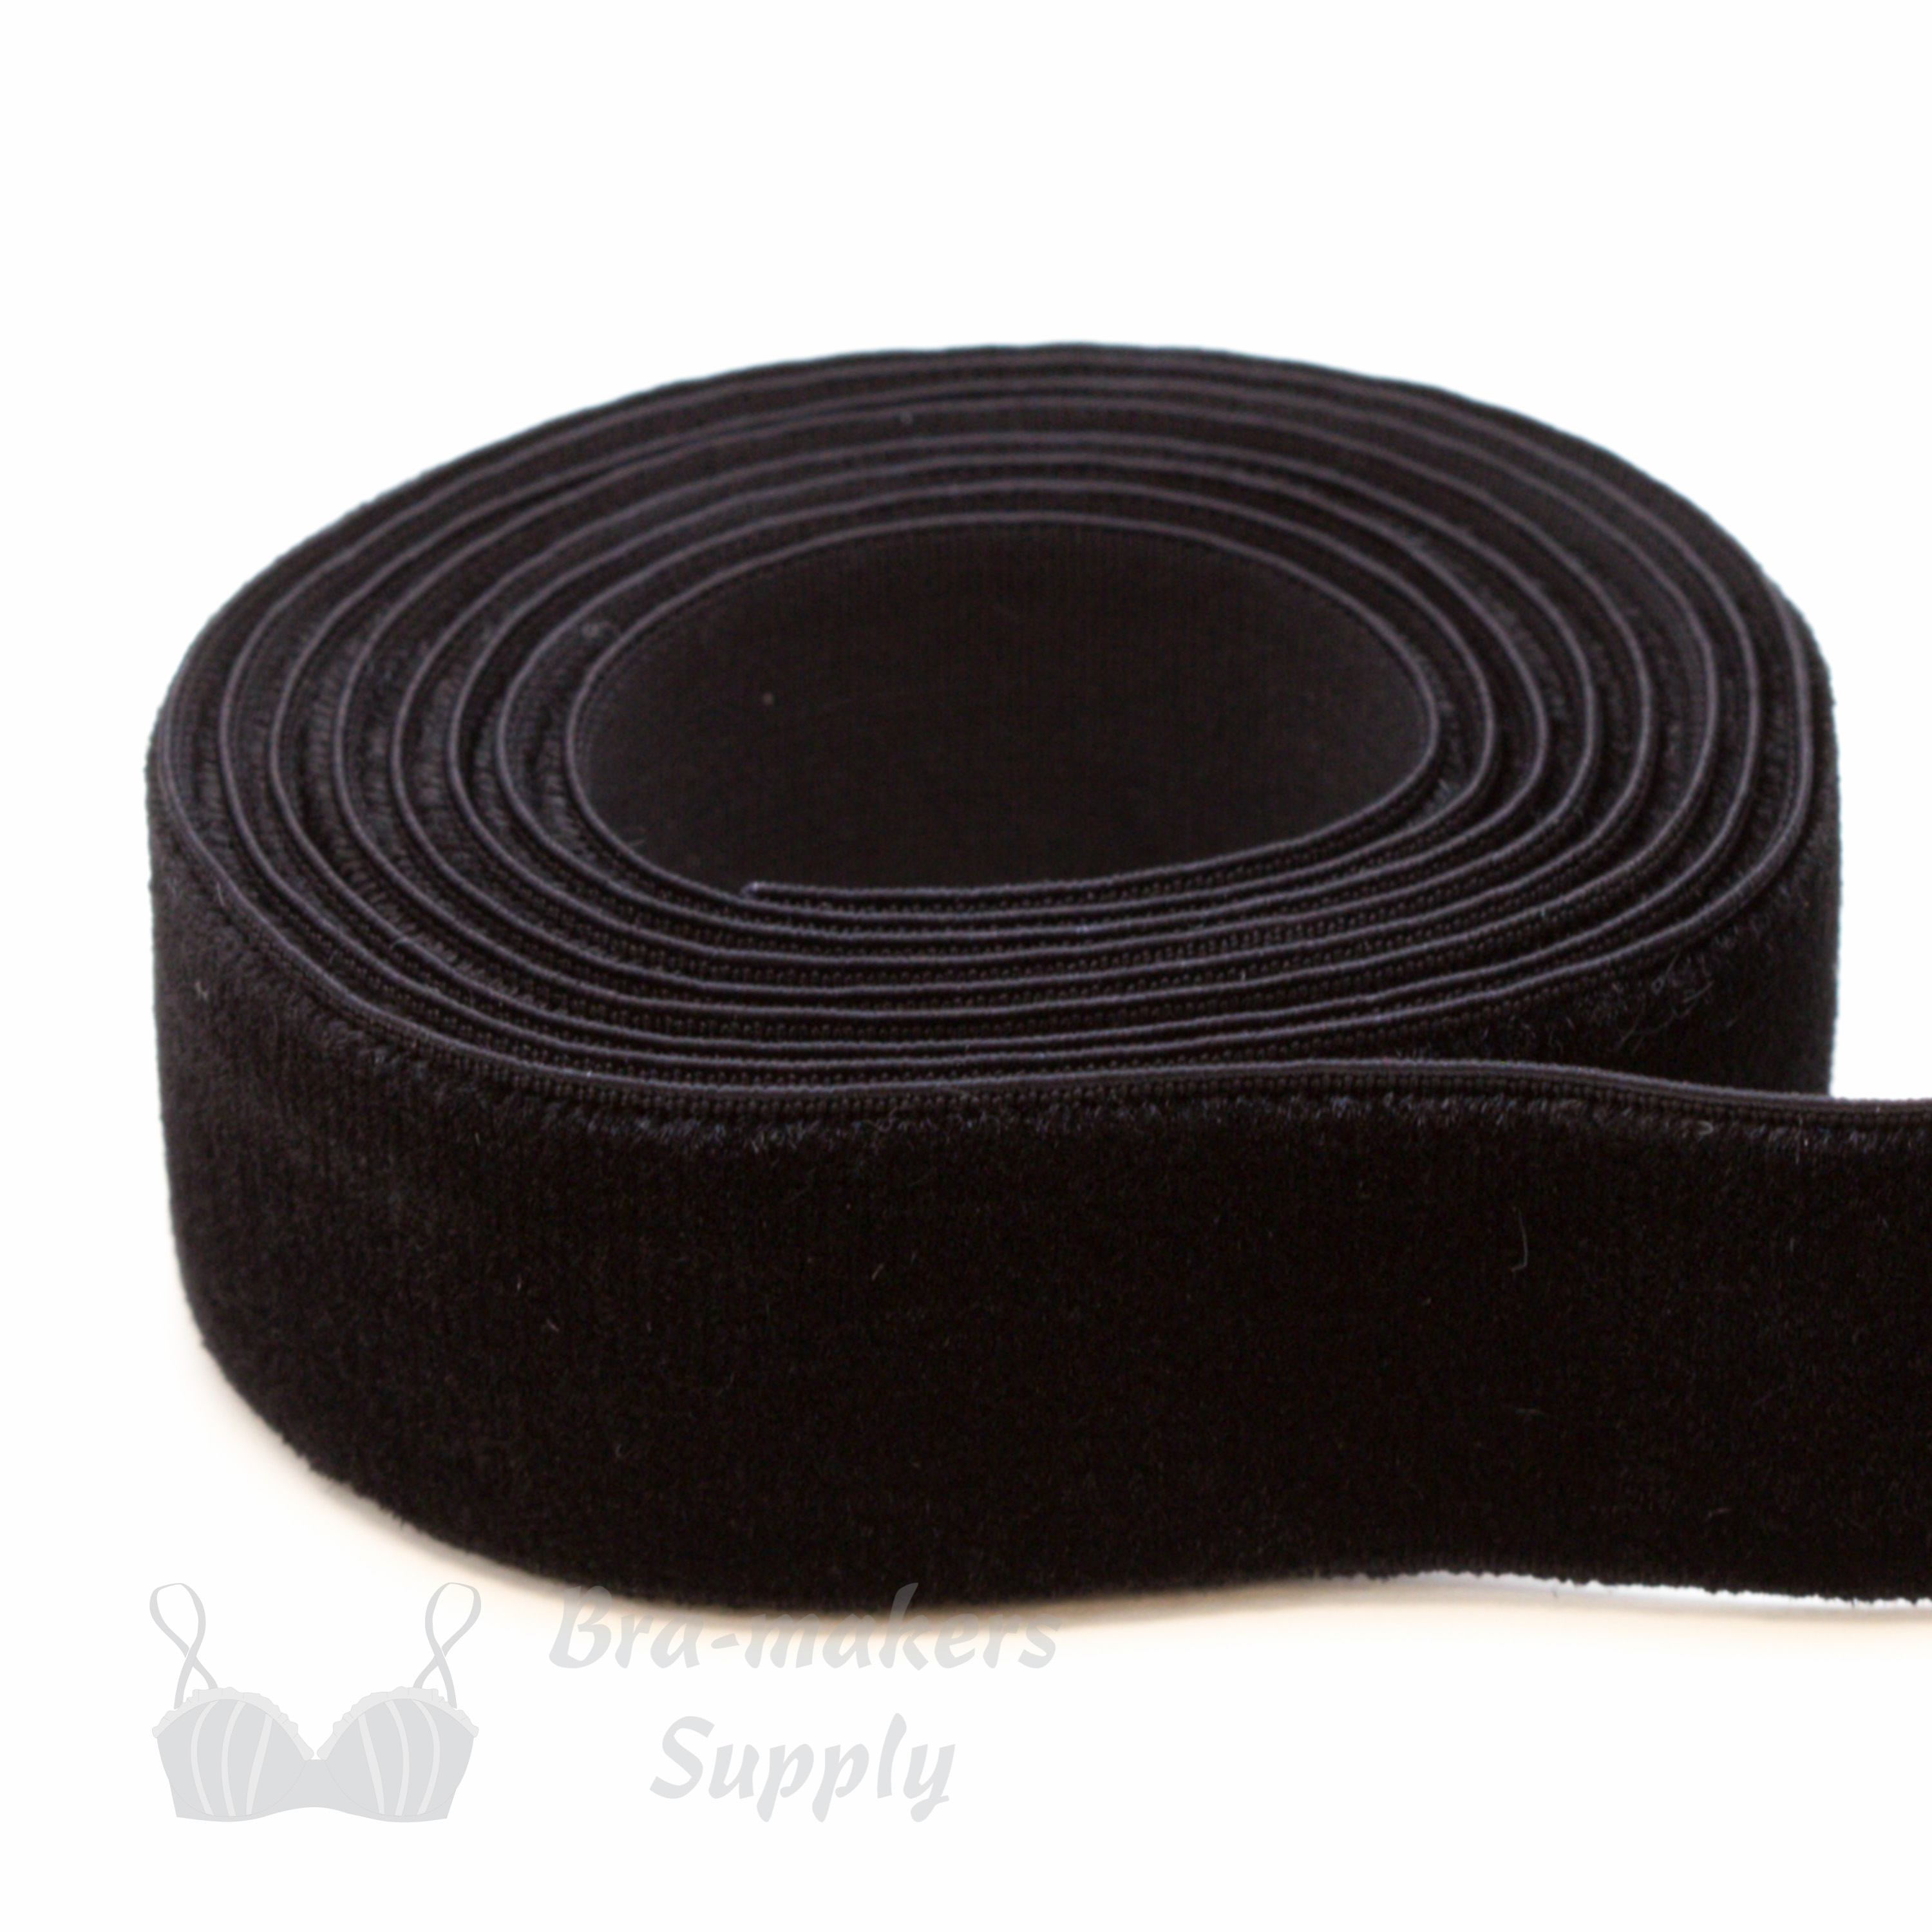 stretch velvet ribbon velvet elastic ES-697 black from Bra-Makers Supply 1 metre roll shown